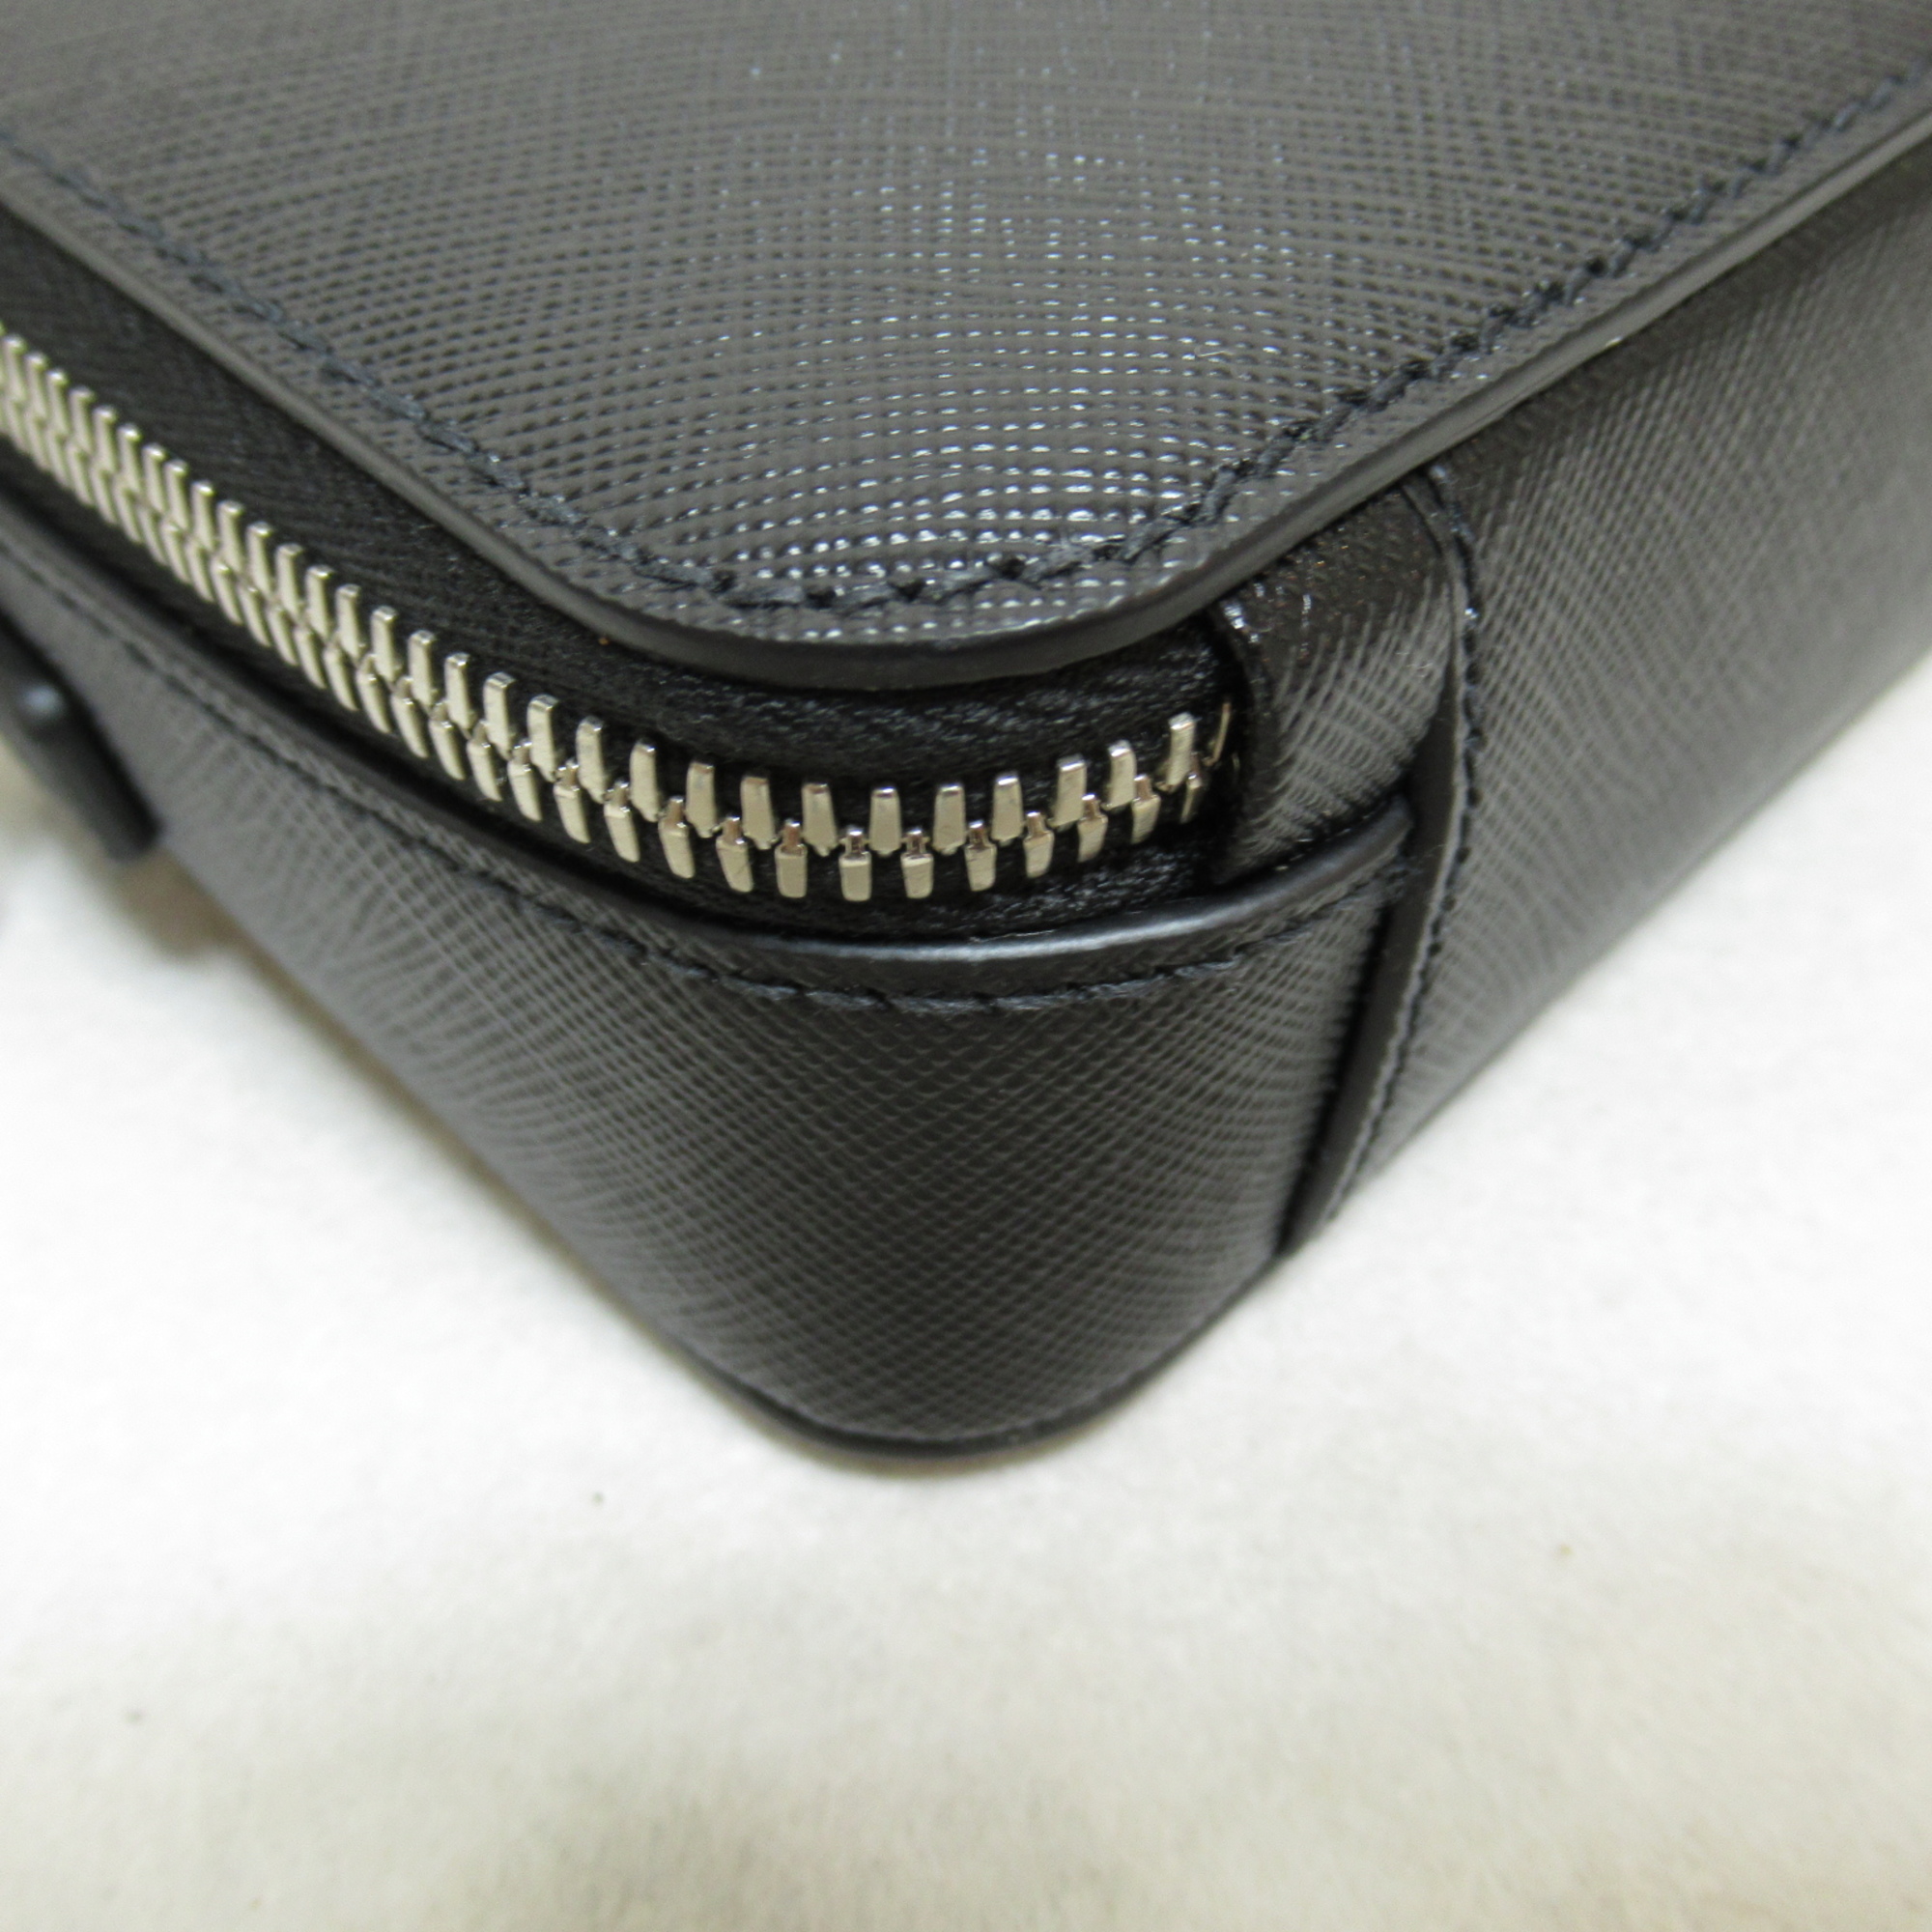 PRADA Shoulder Bag Black Safiano leather 2VH0709Z2F0002